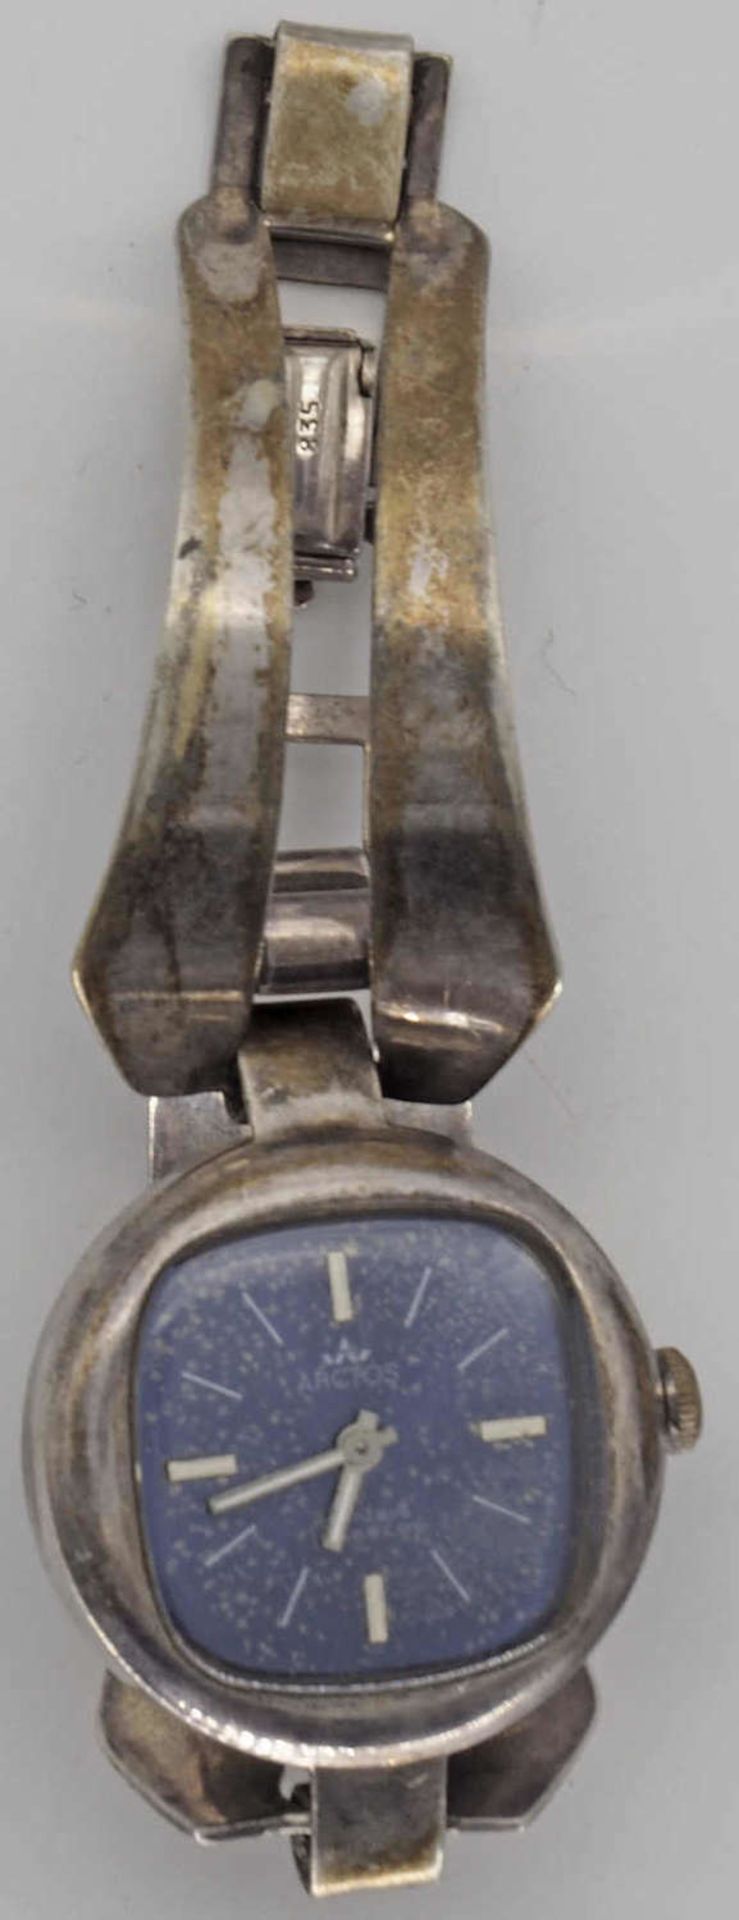 Damen Armbanduhr, 835er Silber, funktionsfähig. Gewicht ca. 31,7 gLadies wristwatch, 835 silver,